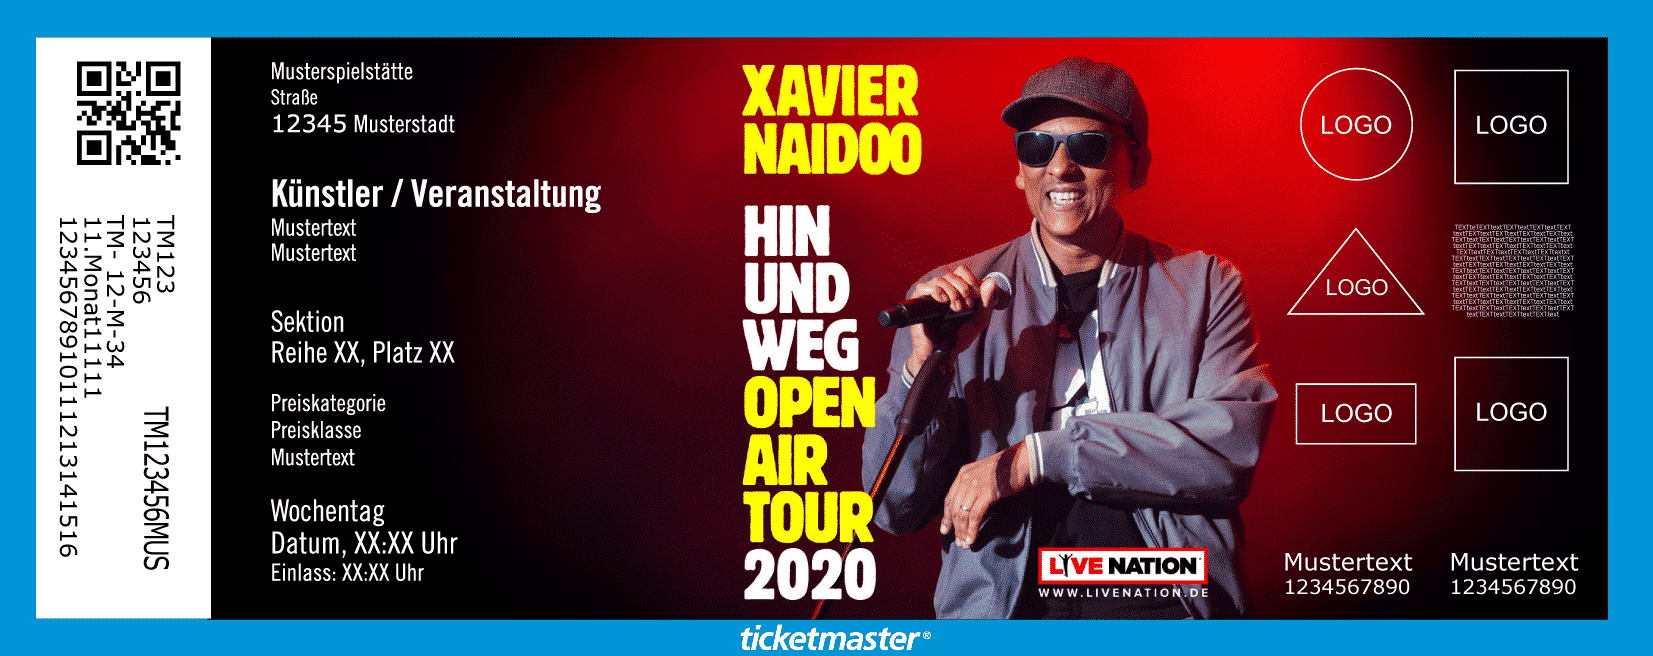 Xavier Naidoo 2020 Tournee